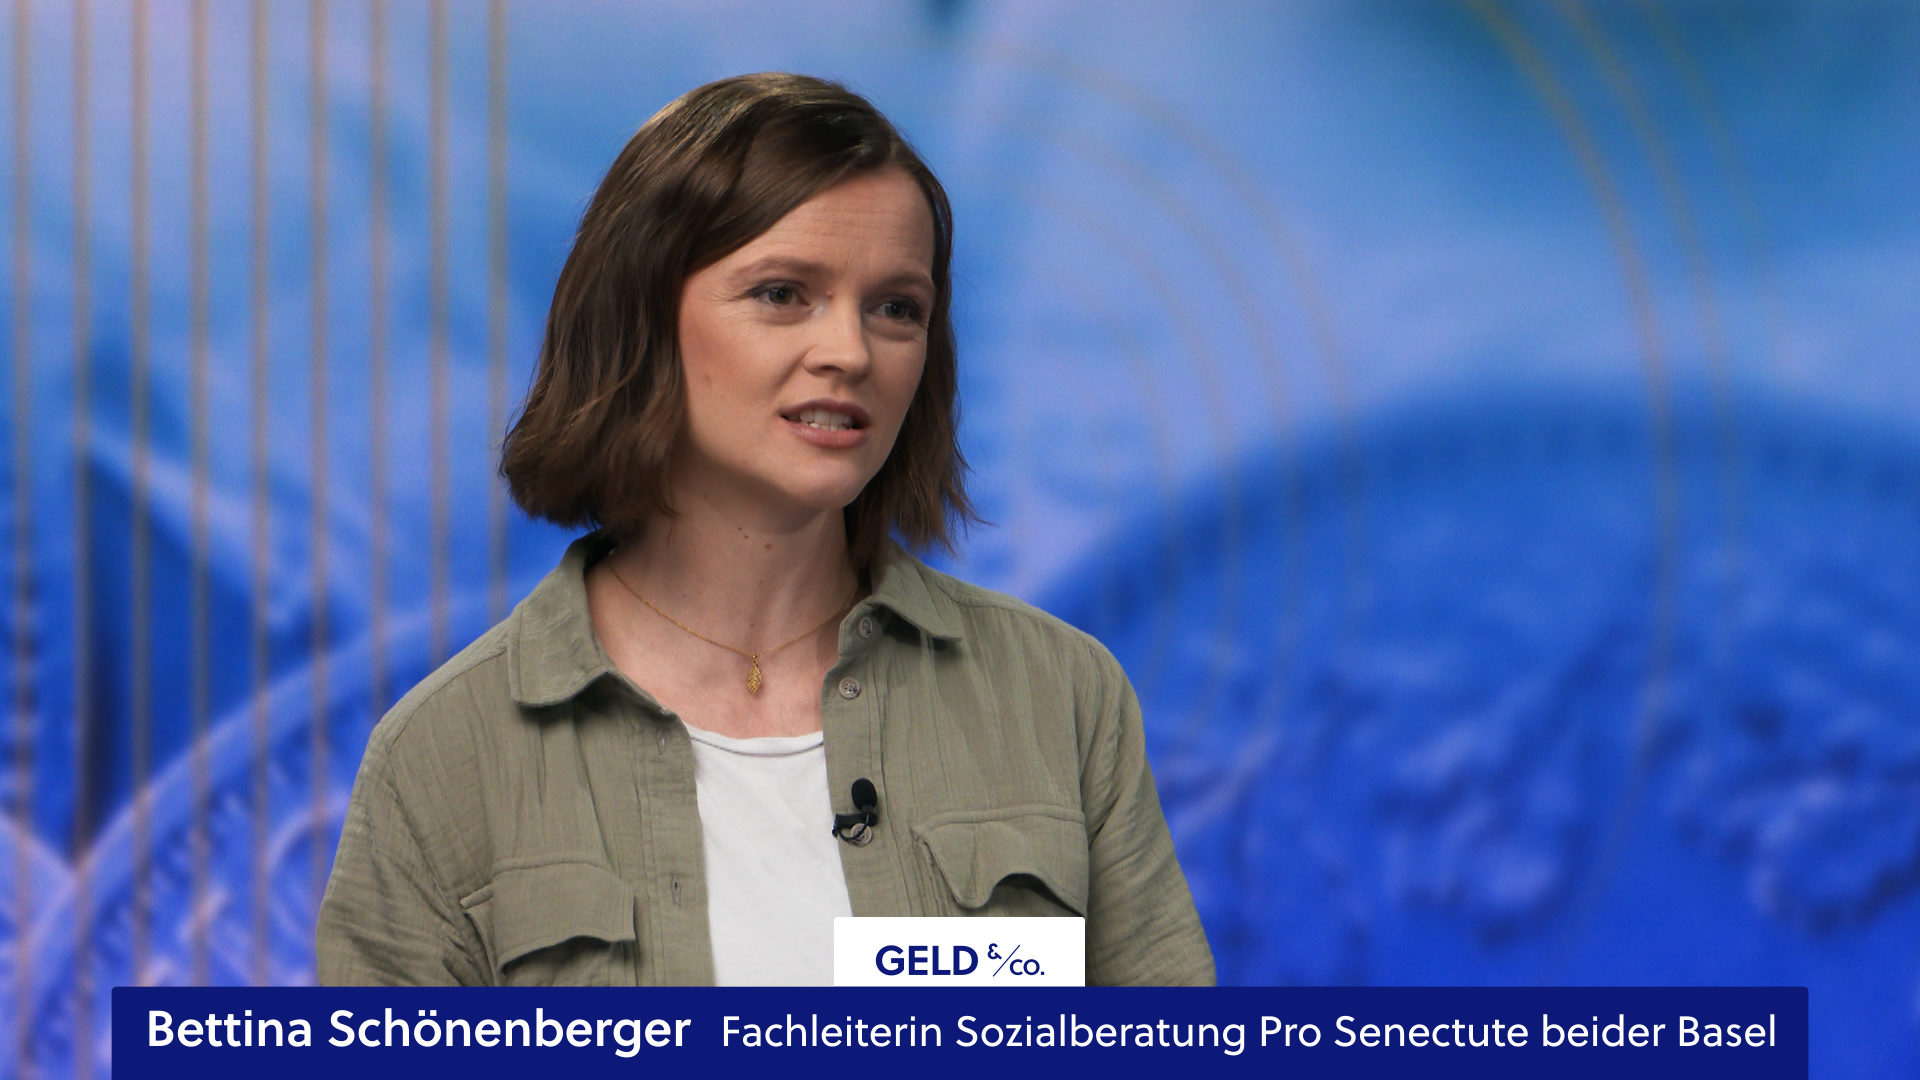 Bettina Schönenberger, Fachleiterin Beratung, beim Interview bei teleBasel Geld und Co.